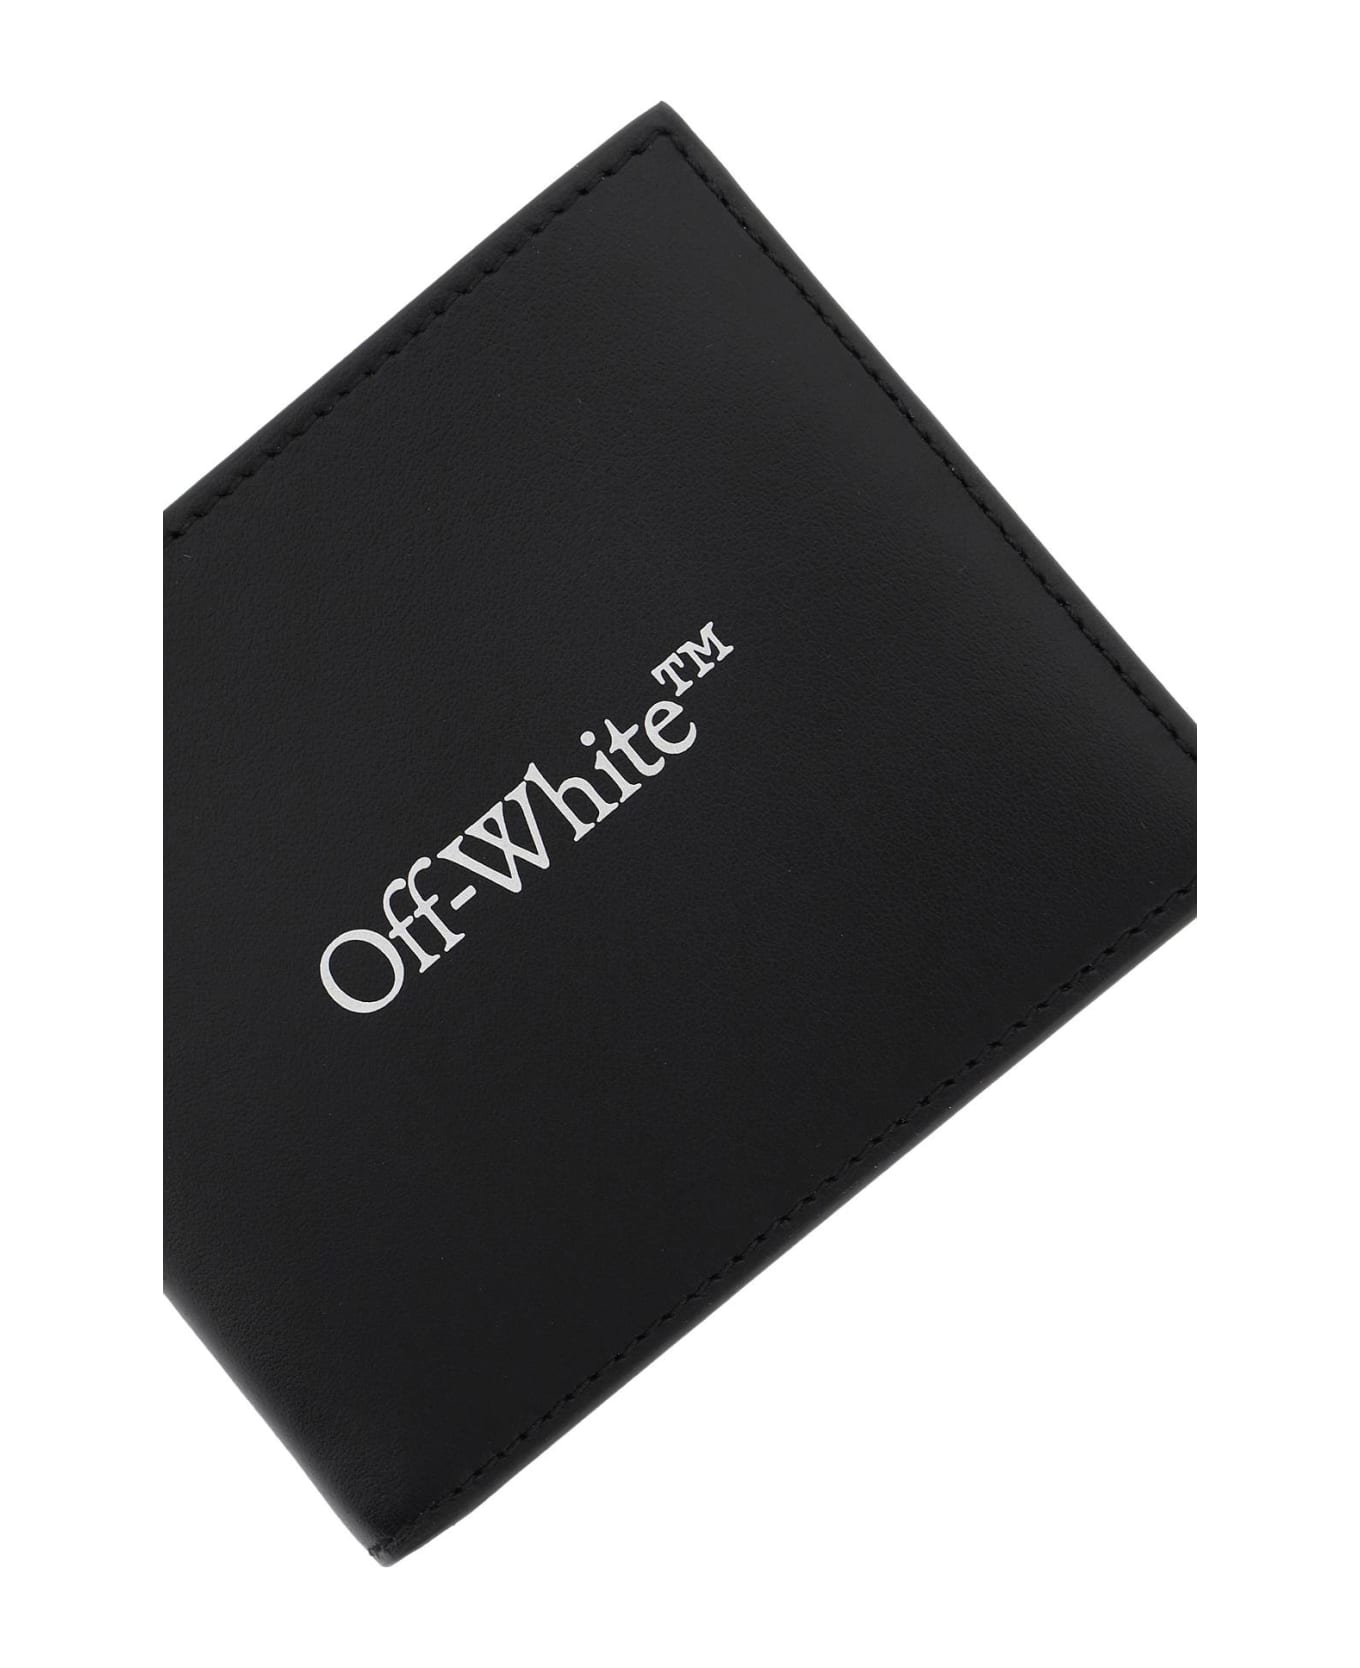 Off-White Bookish Bi-fold Wallet - Black White 財布